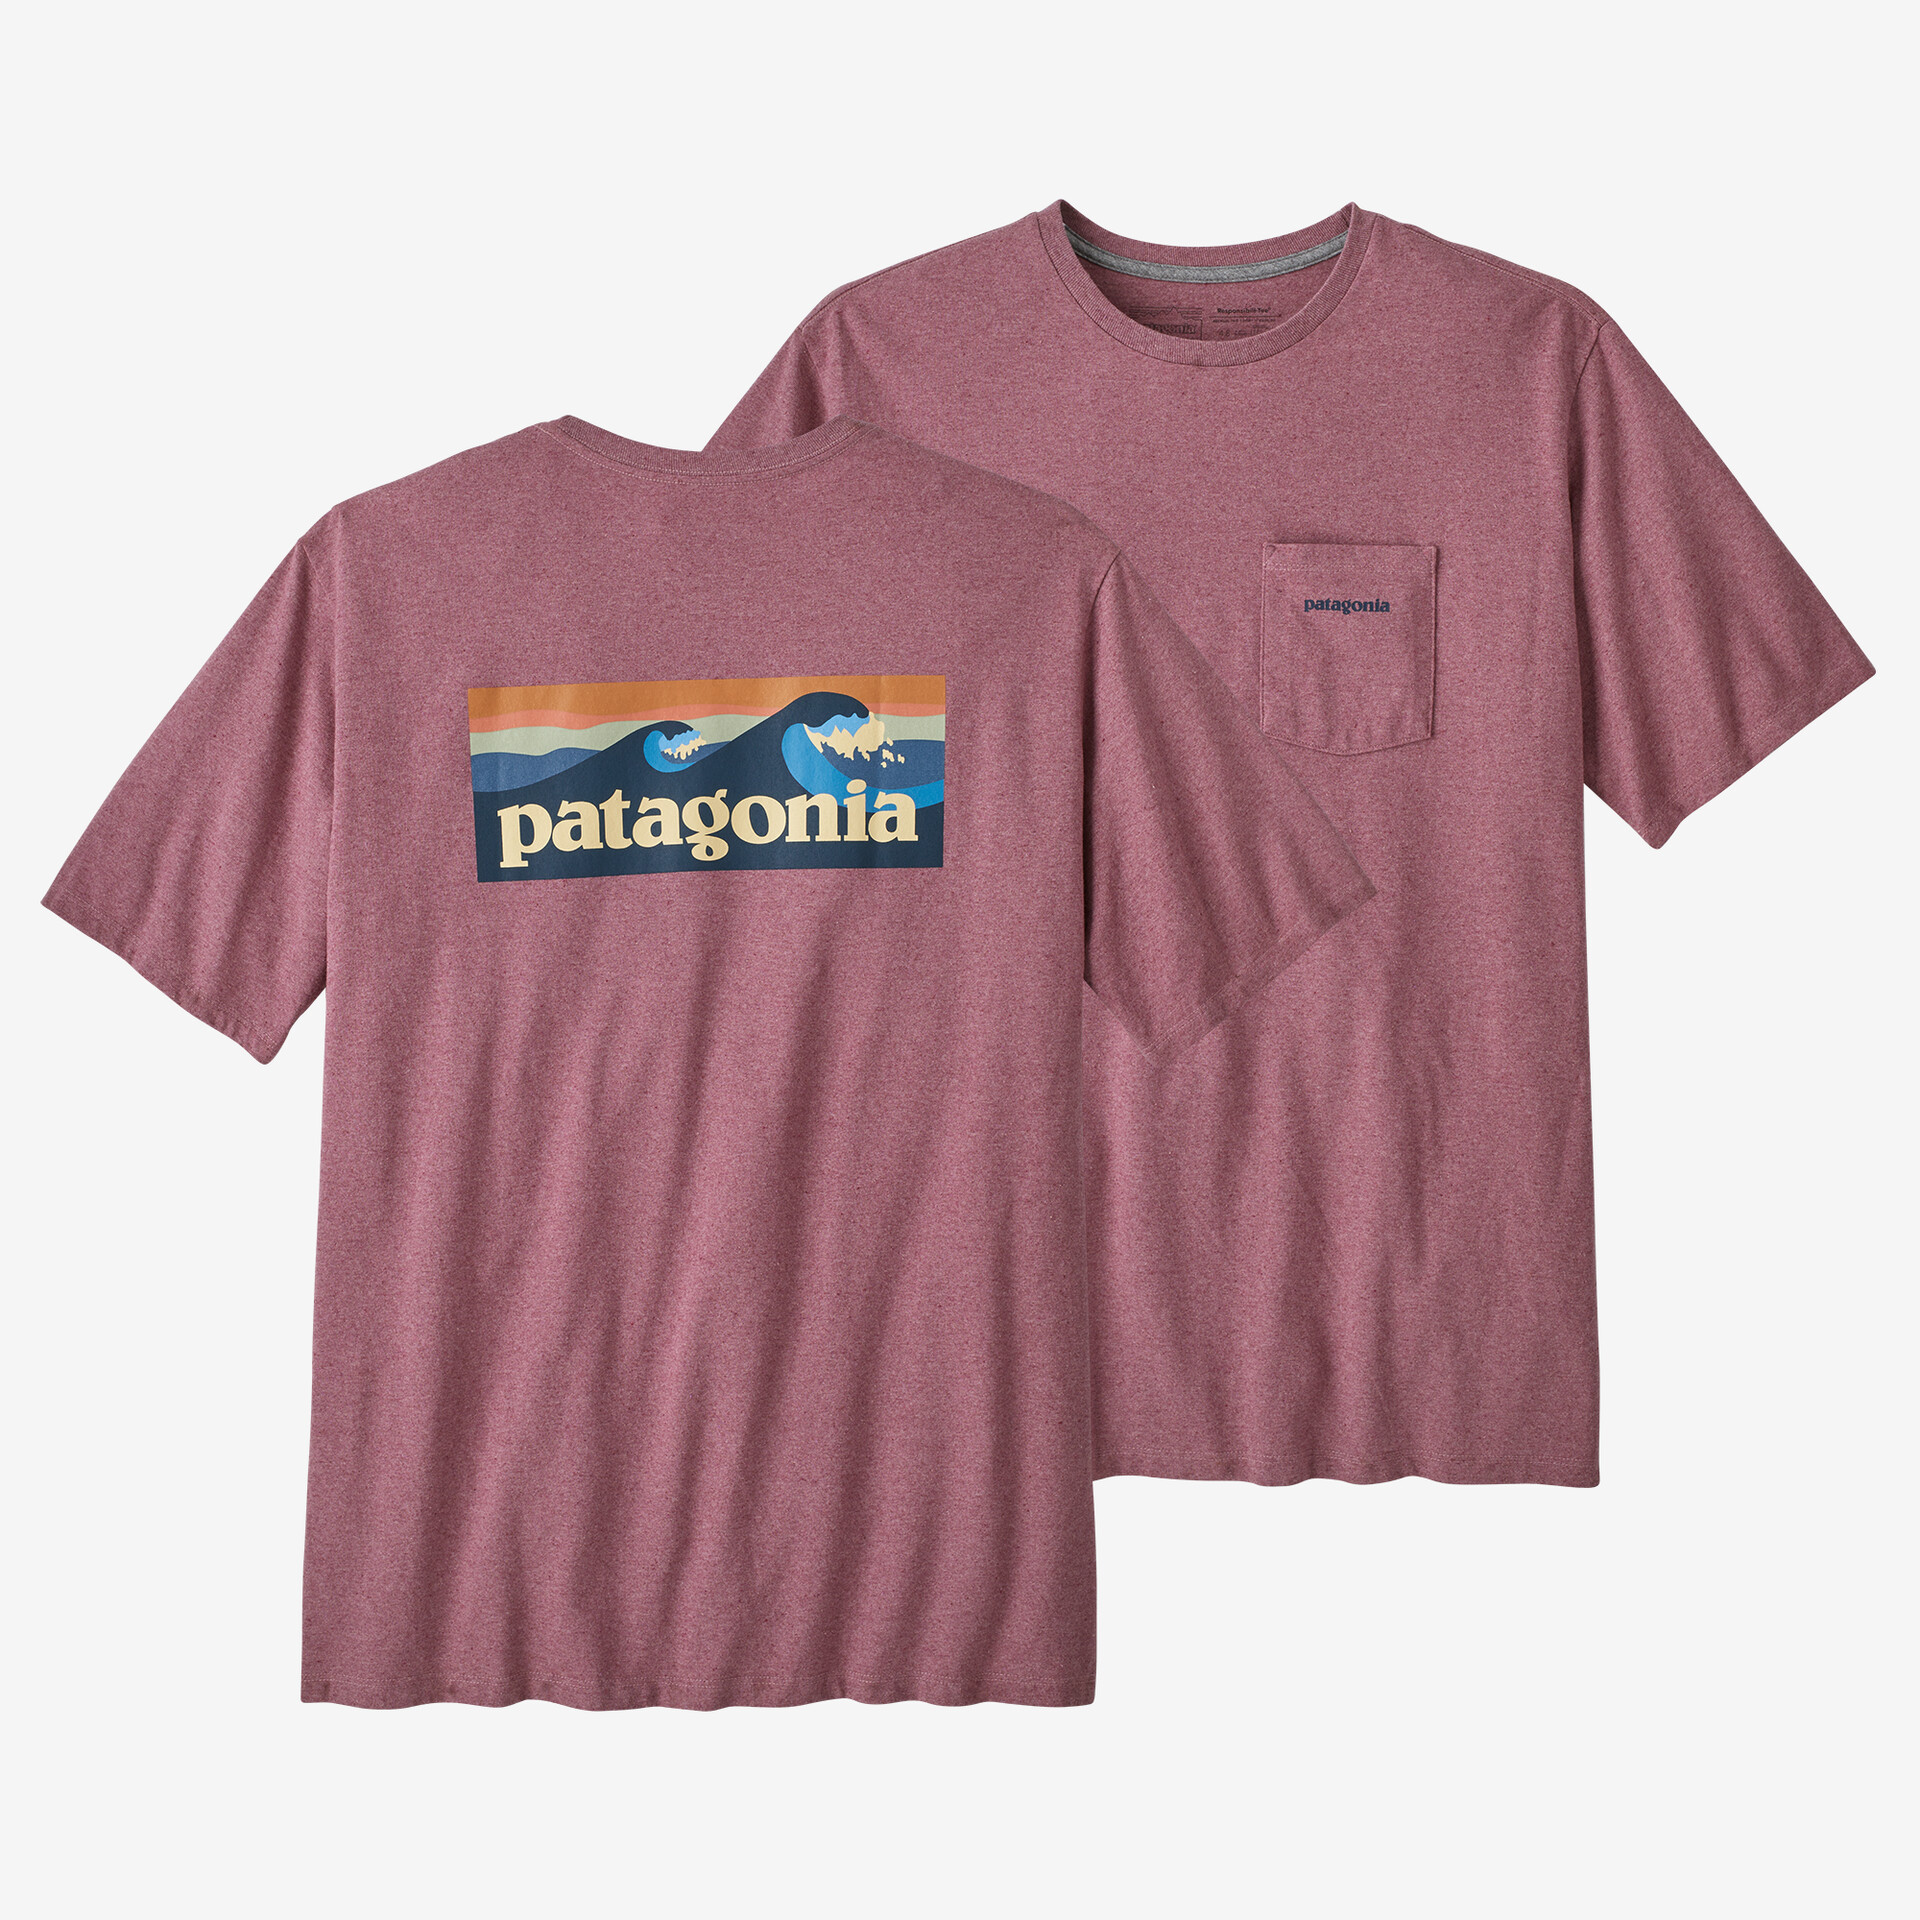 Мужская футболка с логотипом и карманом Responsibili Patagonia, цвет Evening Mauve мужская ответственная футболка с логотипом и карманом patagonia серый